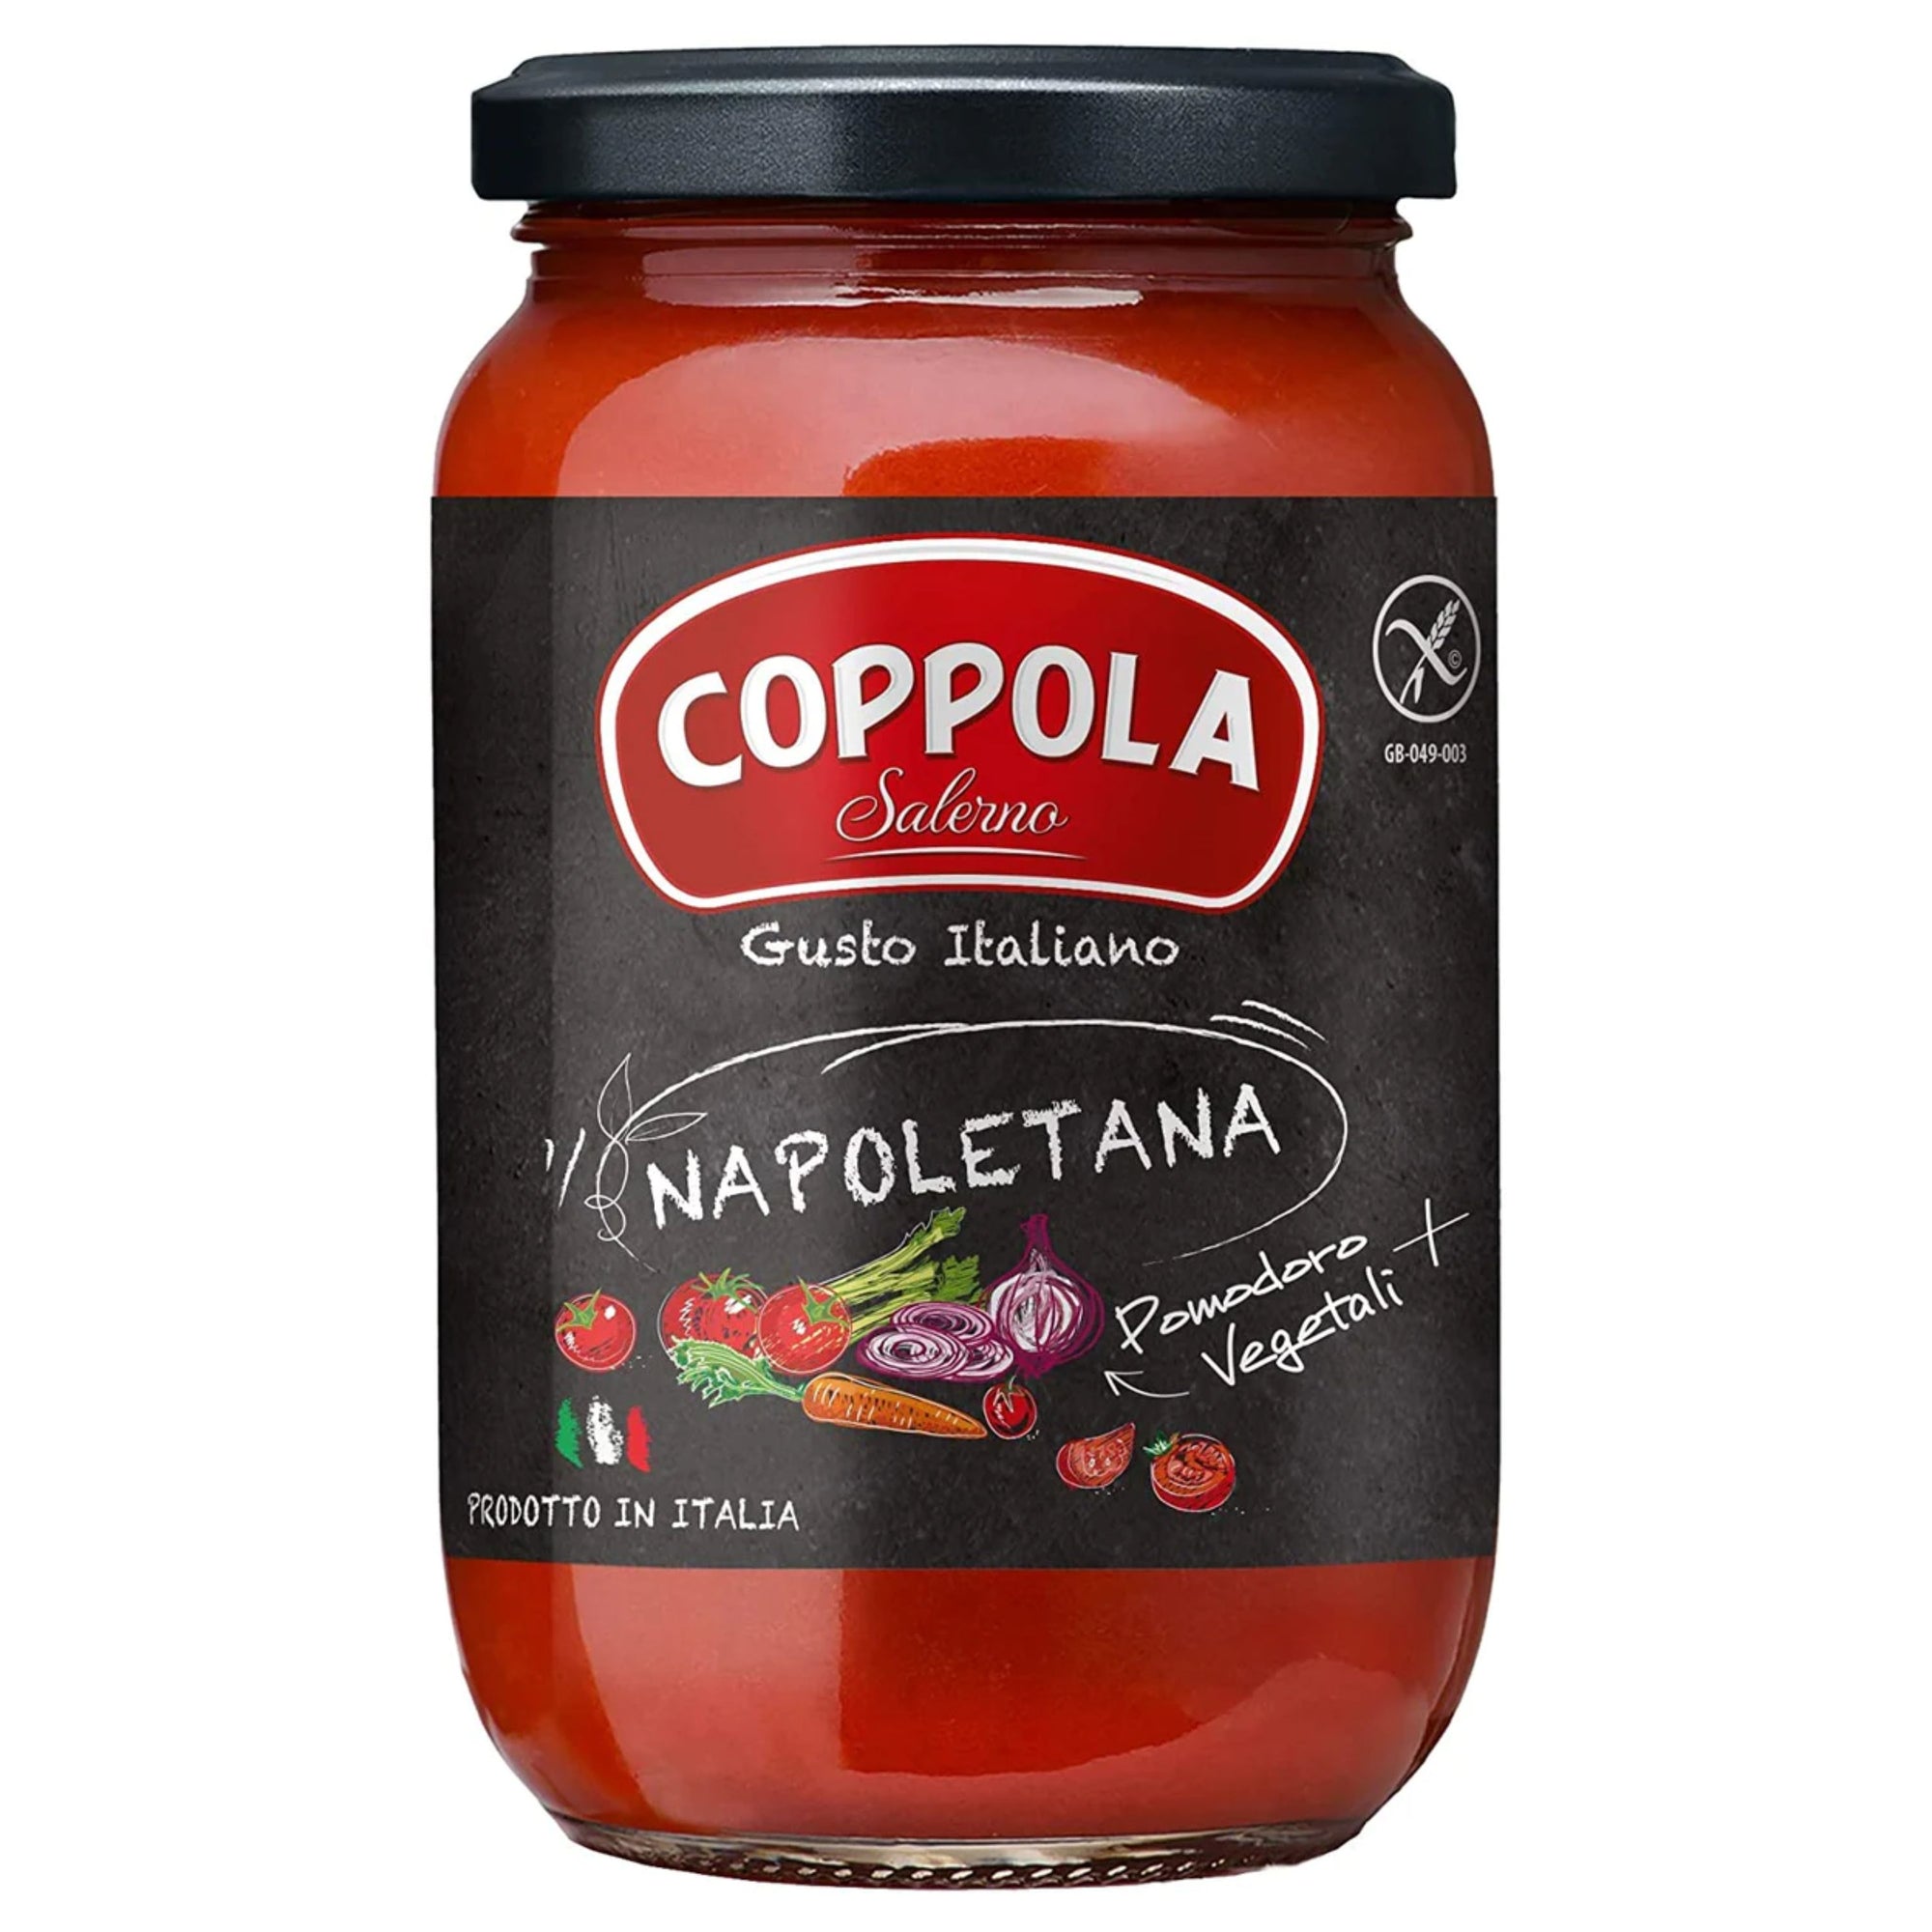 Coppola Napoletana Sauce 350g